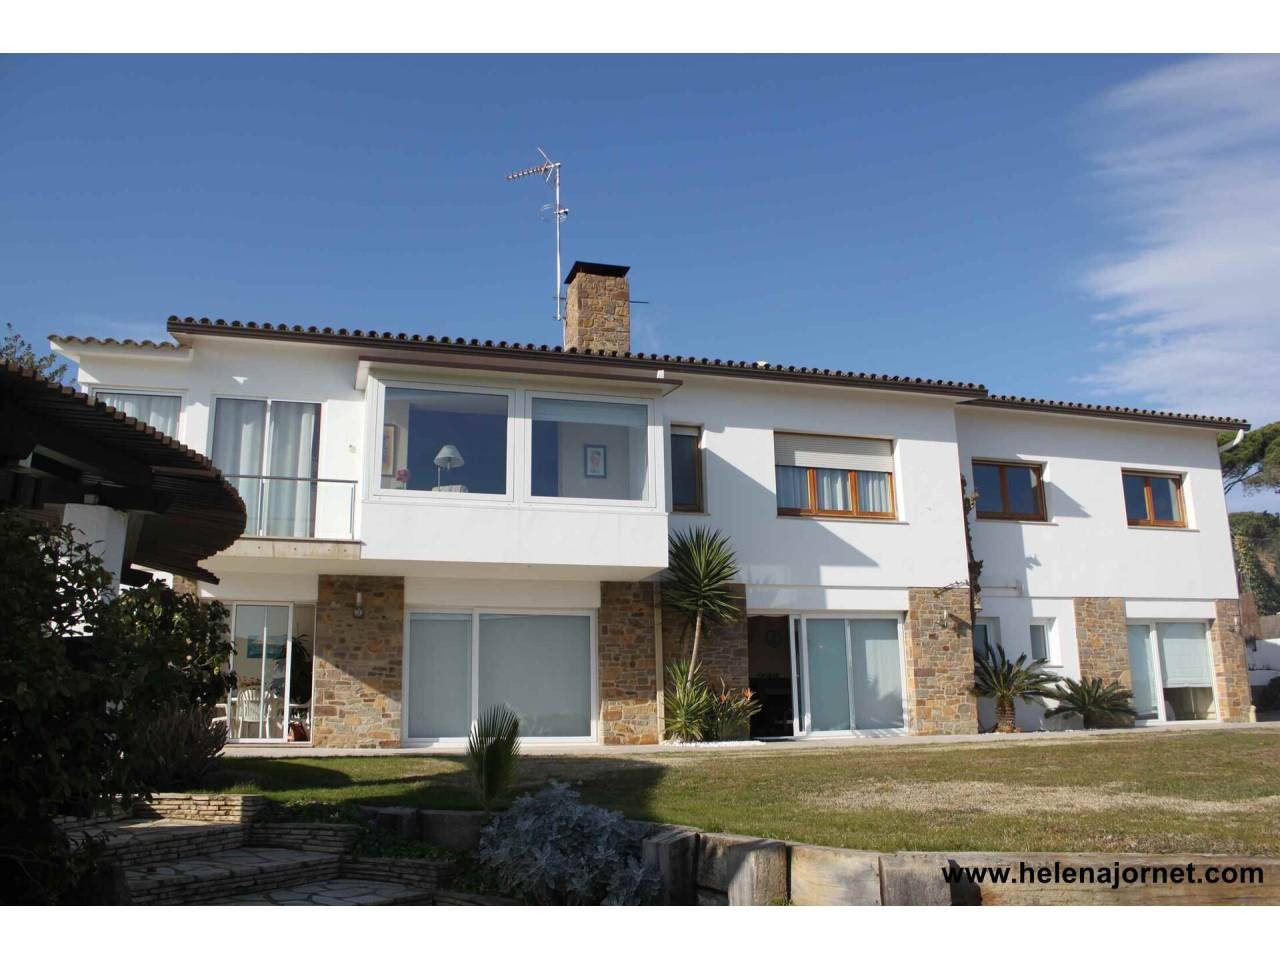 Casa sensacional amb vistes espectaculars a la badia de Sant Pol - 2809